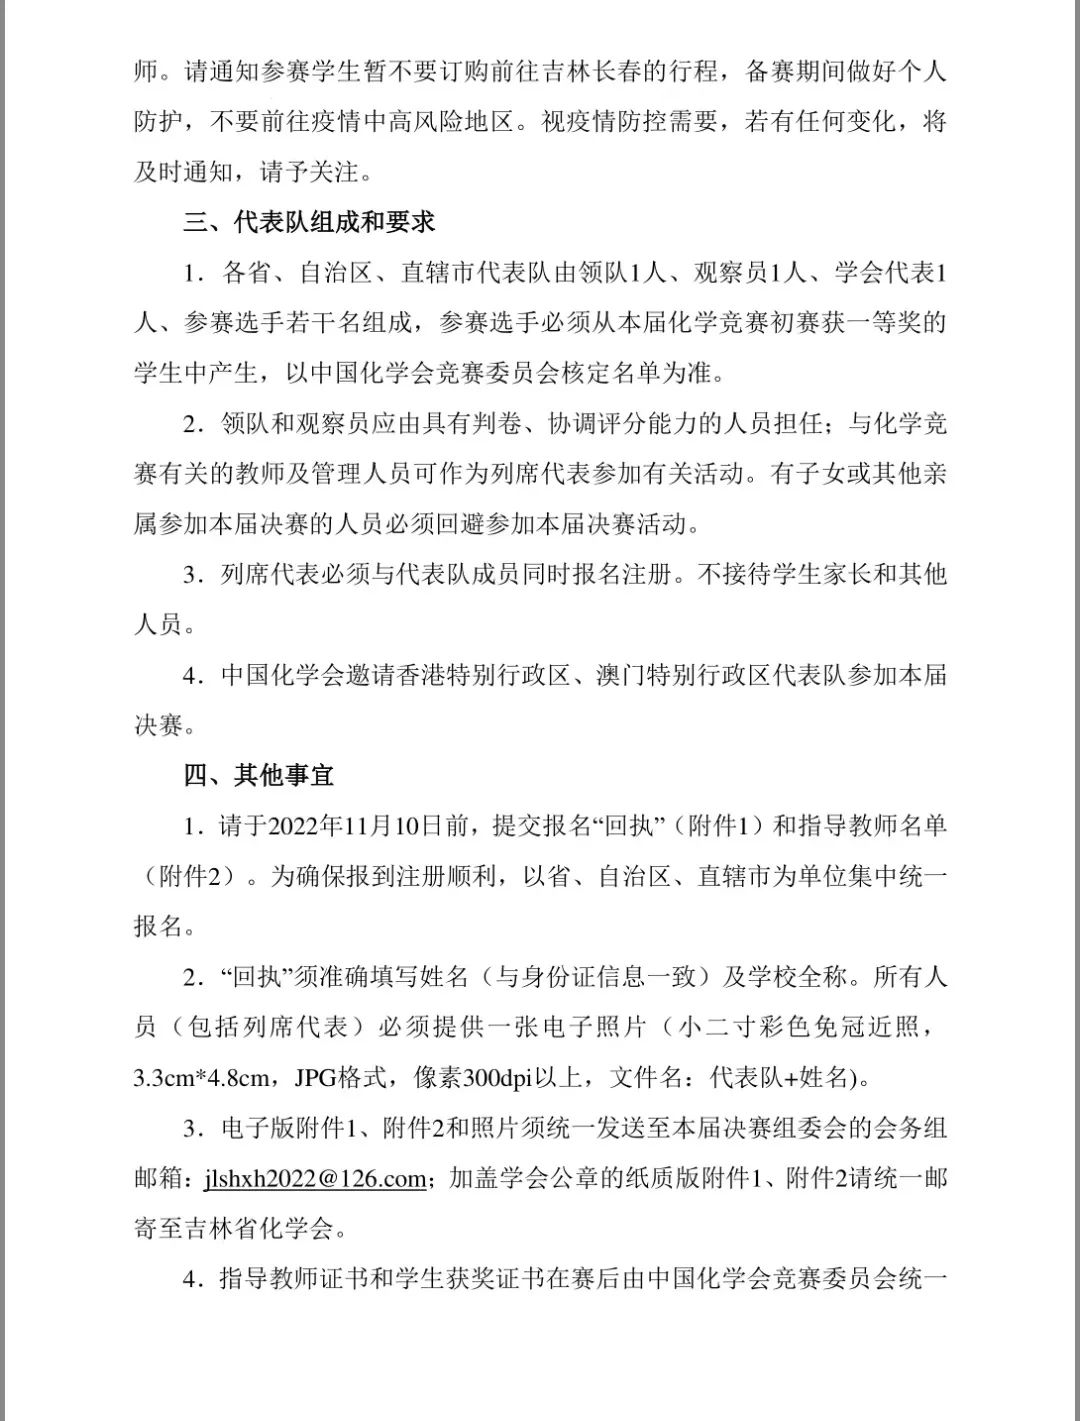 11月26日报到！第36届中国化学奥林匹克（决赛）的第一轮通知发布